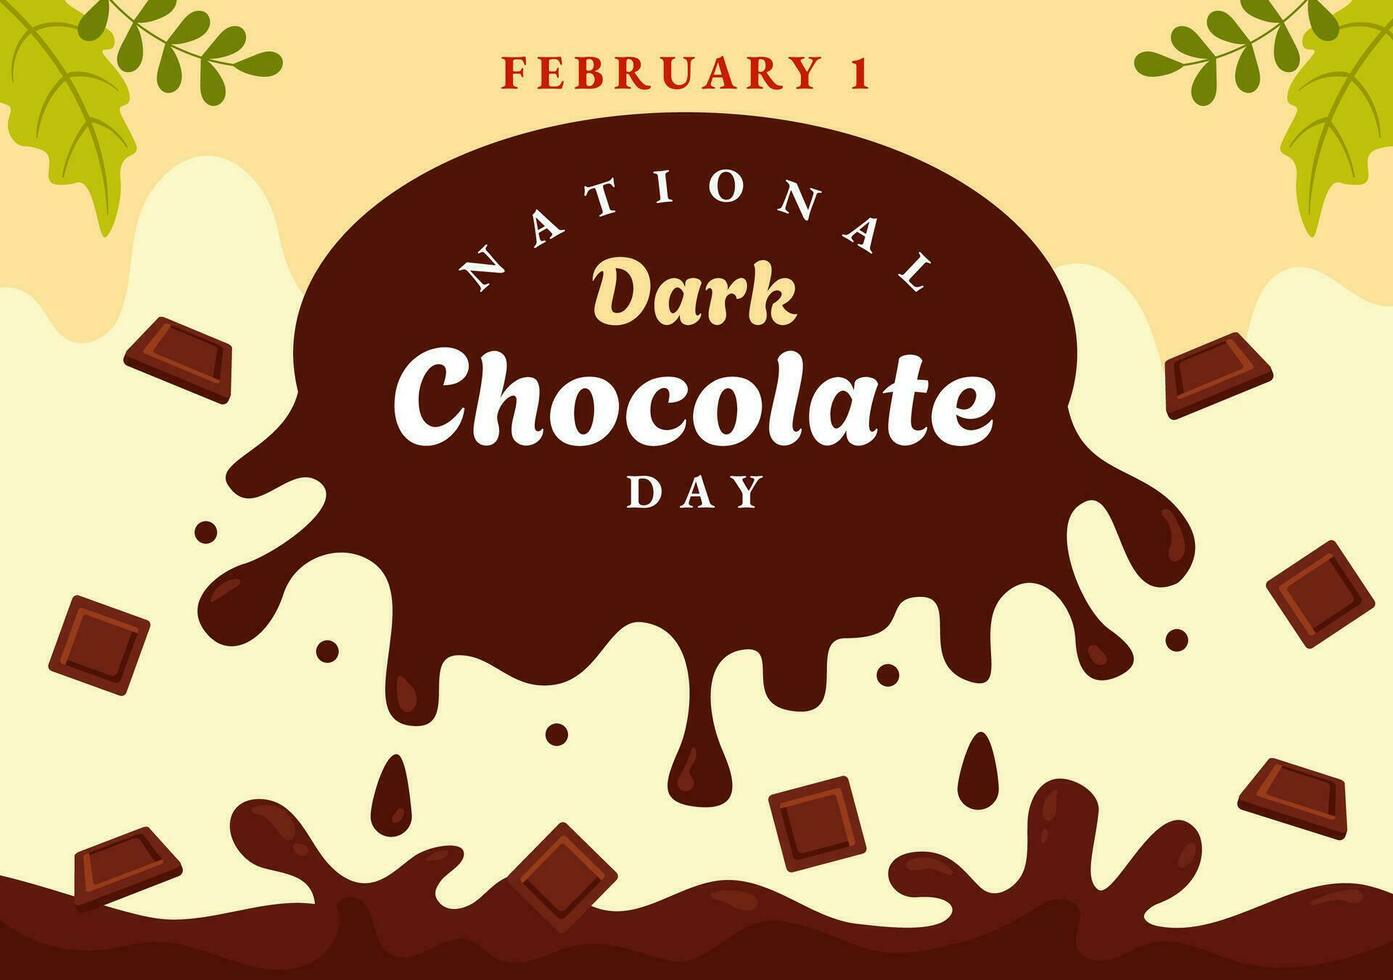 nacional oscuro chocolate día vector ilustración en febrero Primero para el salud y felicidad ese choco trae en plano dibujos animados antecedentes diseño